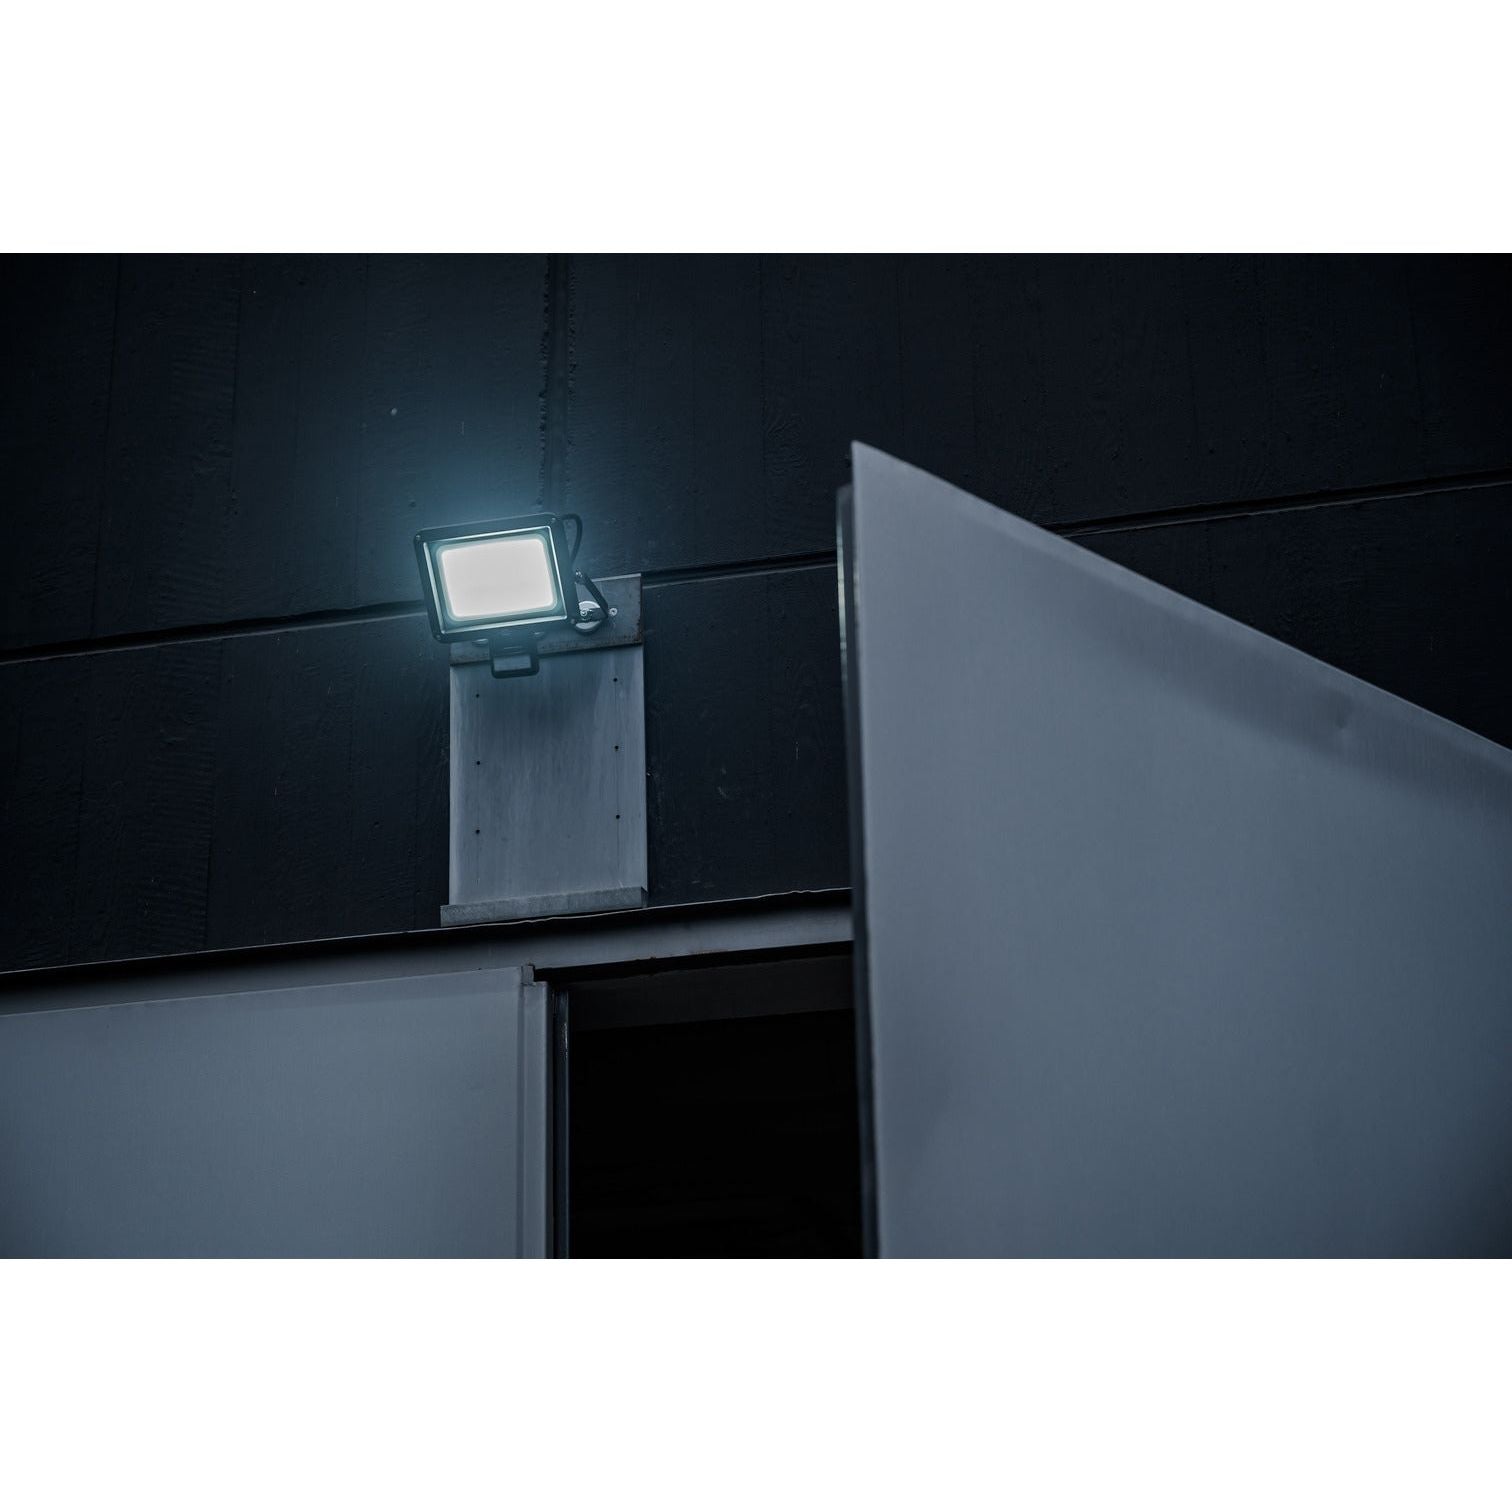 Brennenstuhl LED Strahler JARO 7060 P mit Infrarot-Bewegungsmelder 5800lm, 50W, IP65